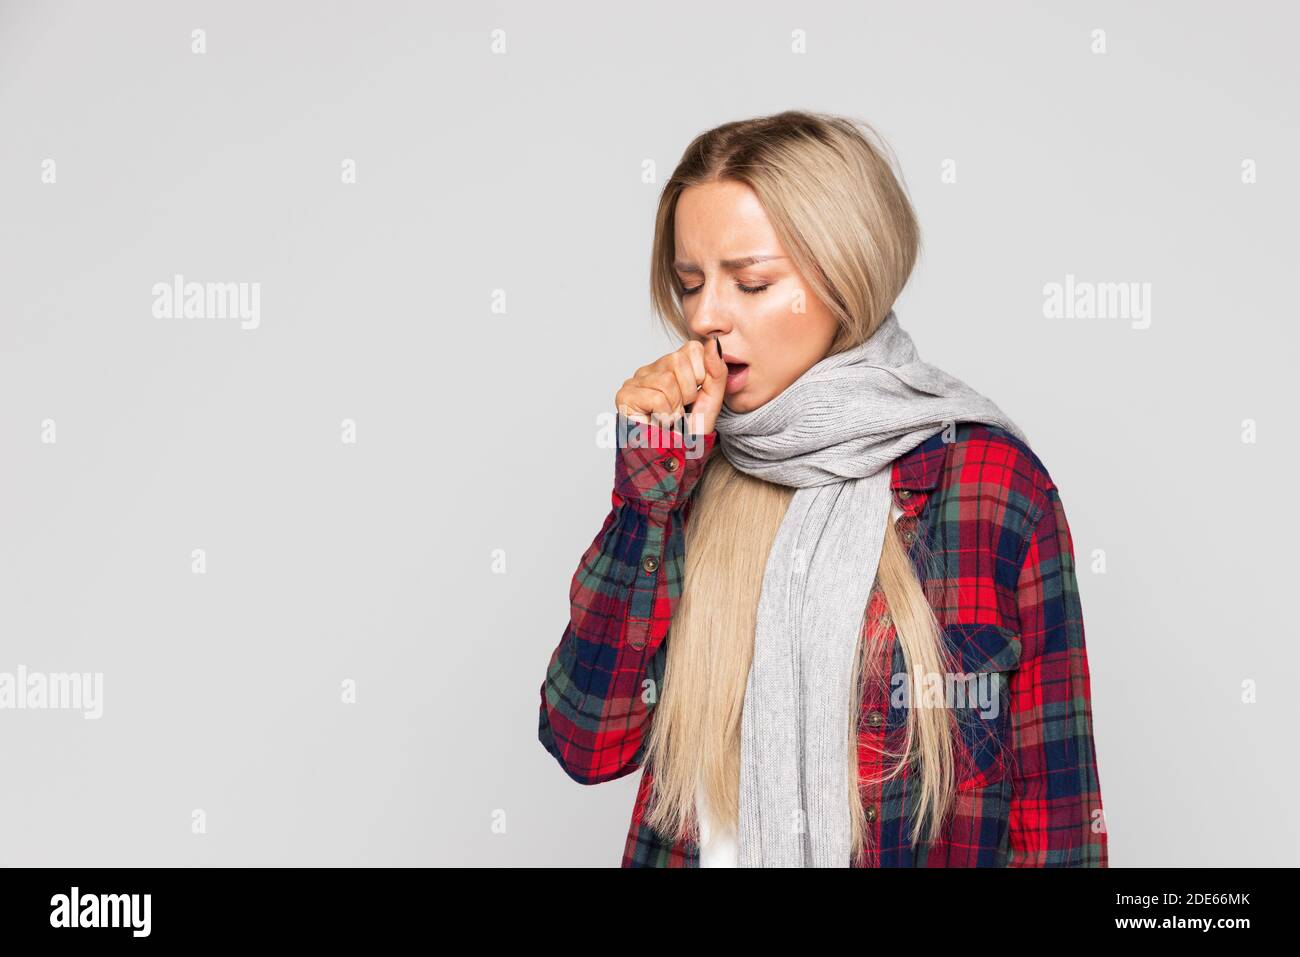 Donna in camicia controllata, sciarpa avvolta tosse, occhi chiusi. La donna malata ha influenza. Freddo, malattia. Foto Stock